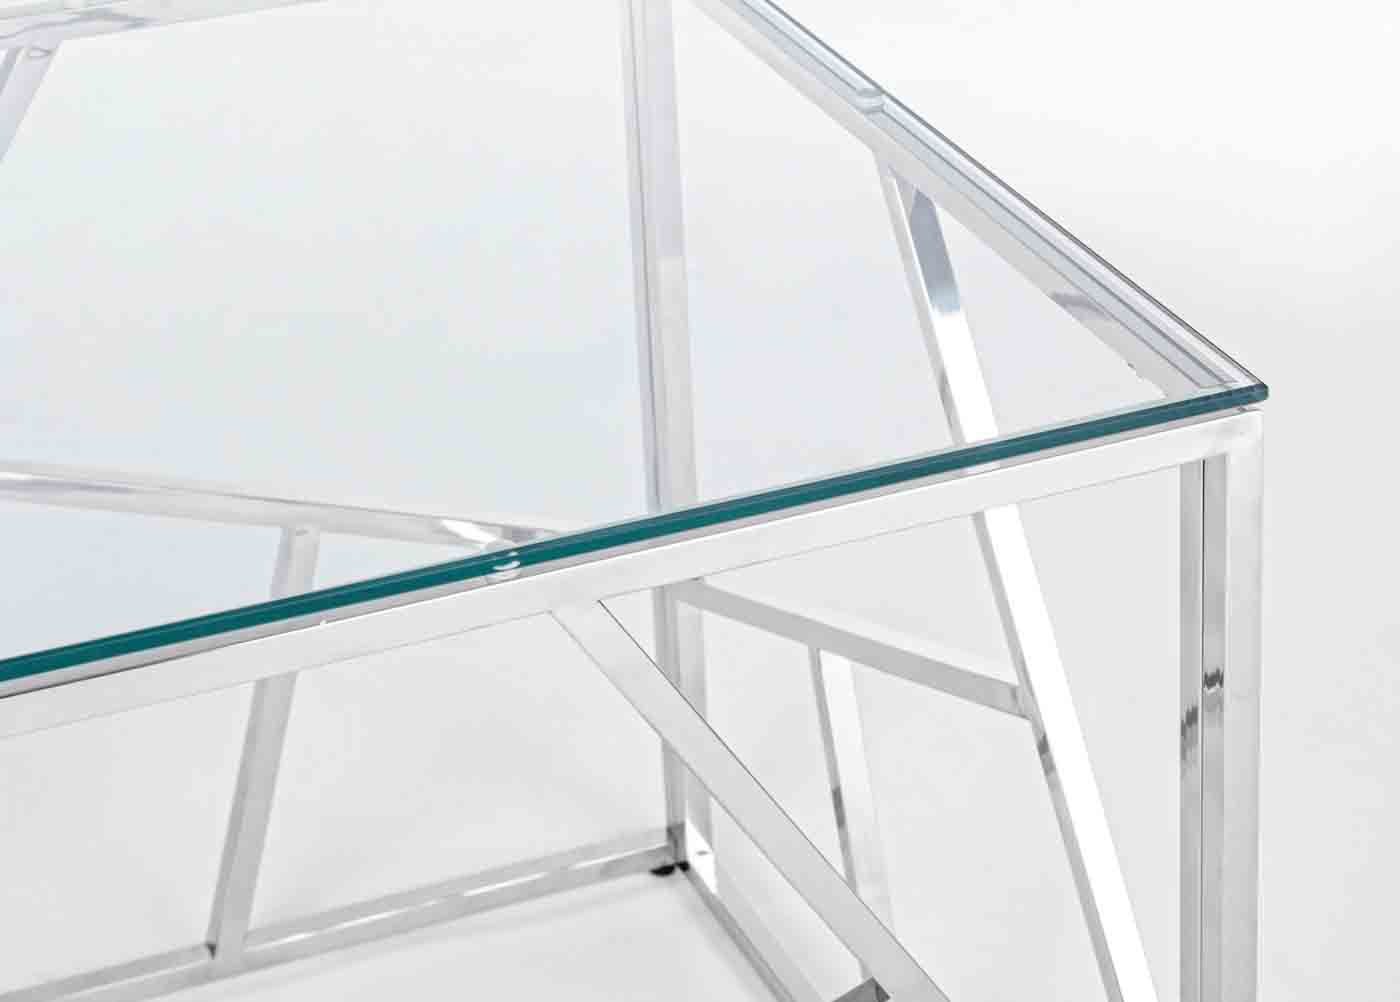 Beistelltisch Rayan in einem modernen Design. Hergestellt aus Metall  in einem silbernen Farbton. Die Tischplatte ist aus Glas. Marke Bizotto.